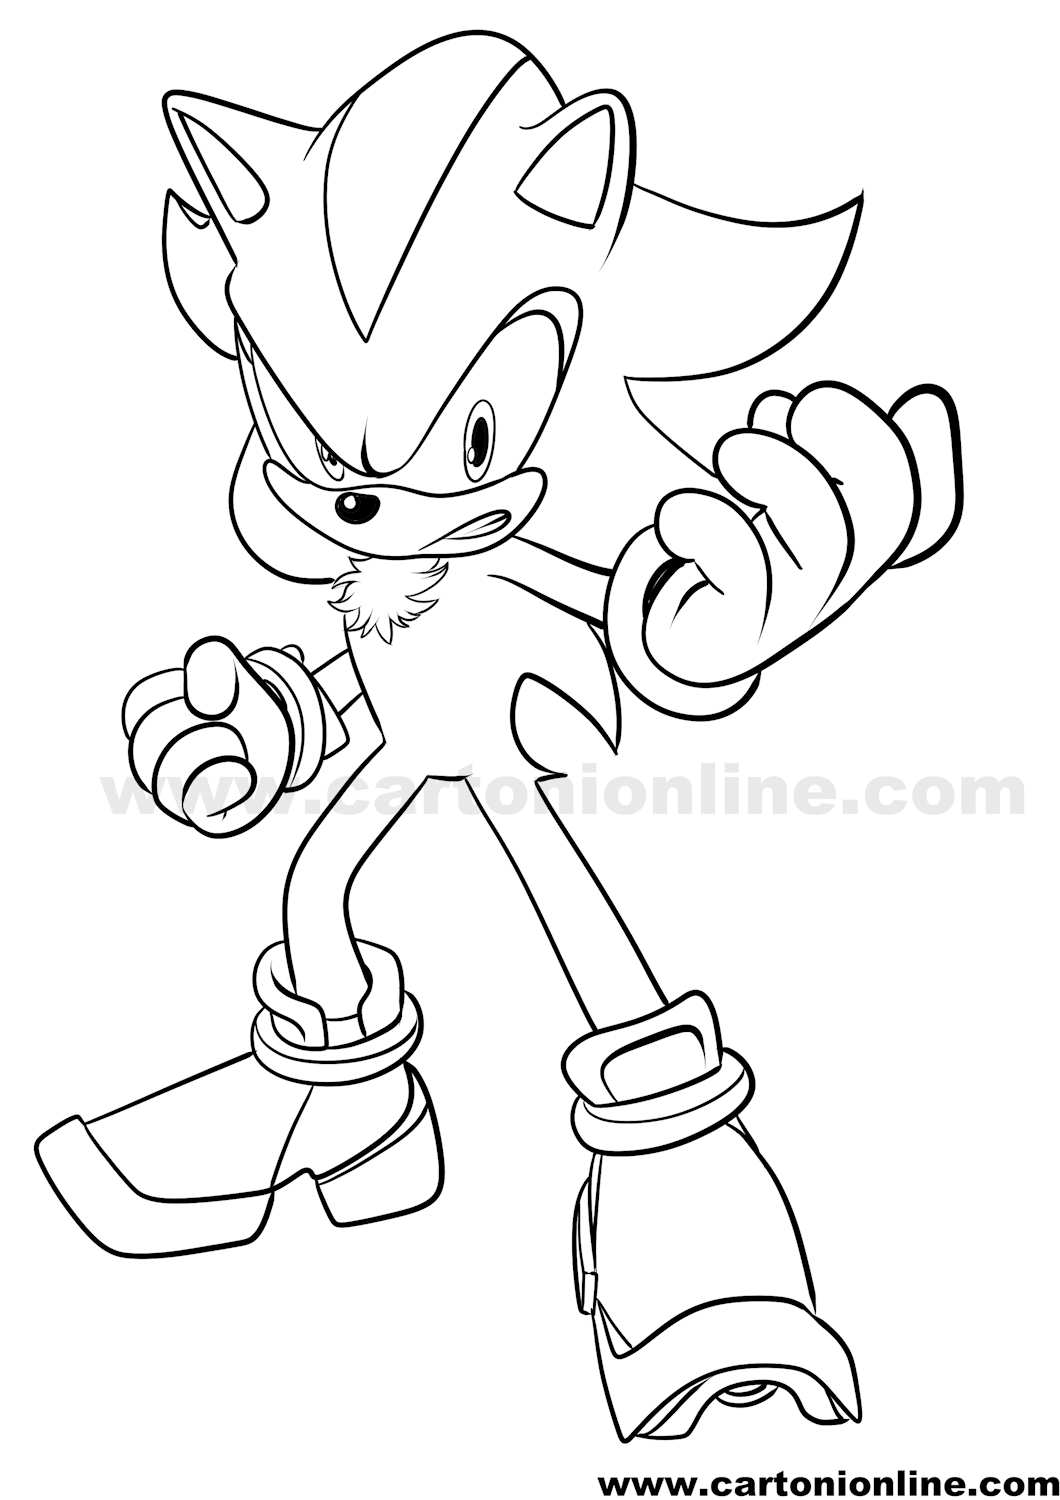 Disegno di Shadow 03 di Sonic da stampare e colorare